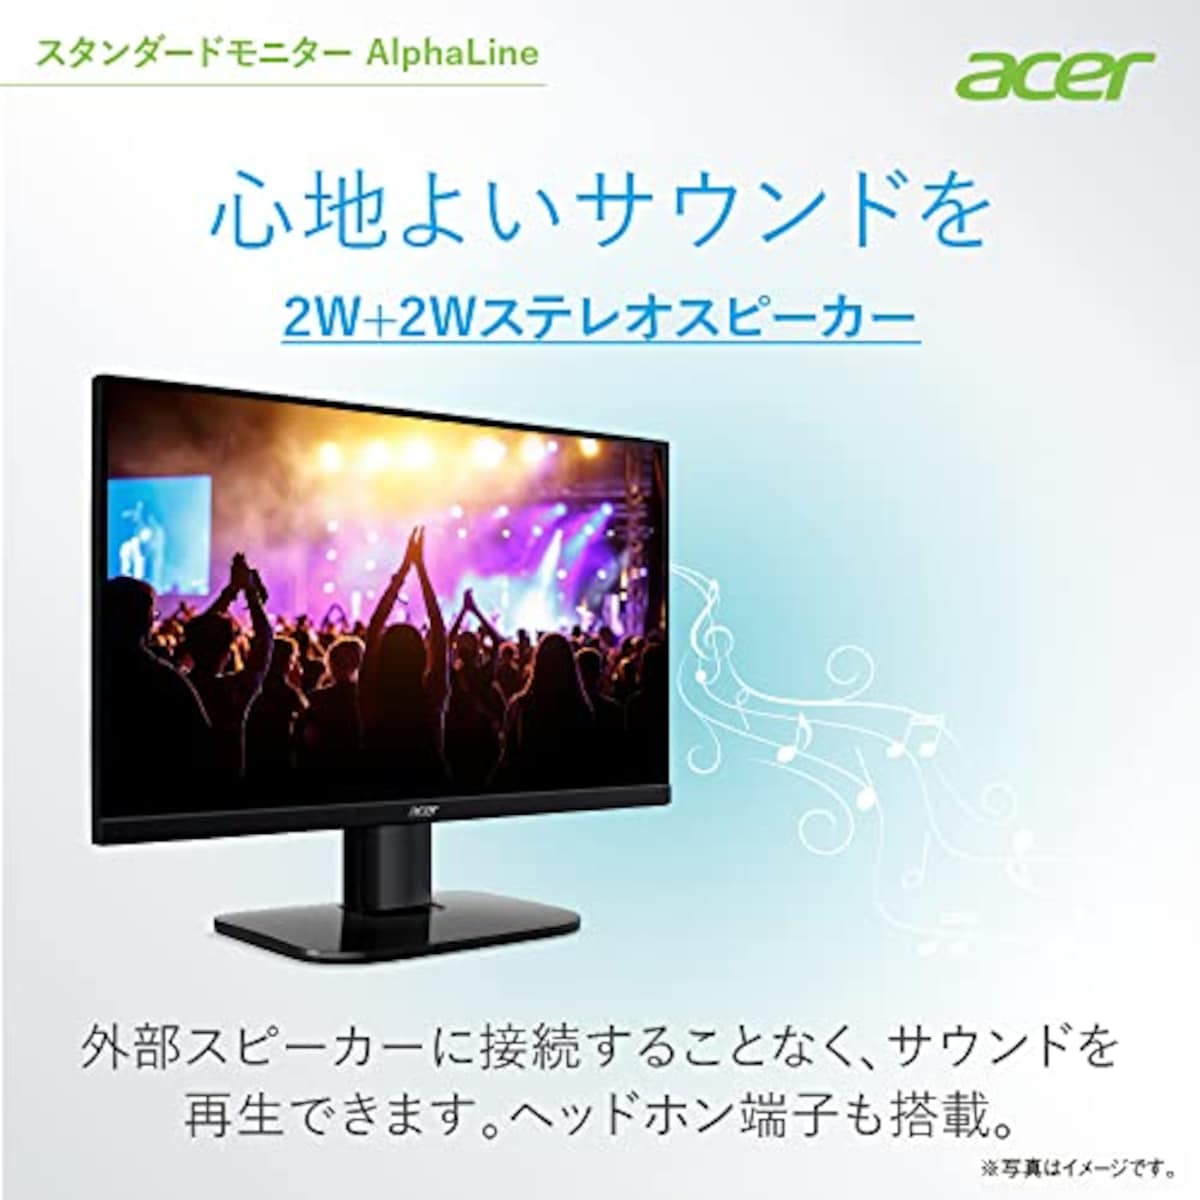  日本エイサー 【Amazon.co.jp限定】 Acer モニター AlphaLine KA272Ebmix 27インチ IPS 非光沢 フルHD 100Hz 1ms(VRB) HDMI ミニD-Sub15 VESAマウント対応 スピーカー内蔵 ヘッドホン端子 AMD FreeSync画像6 